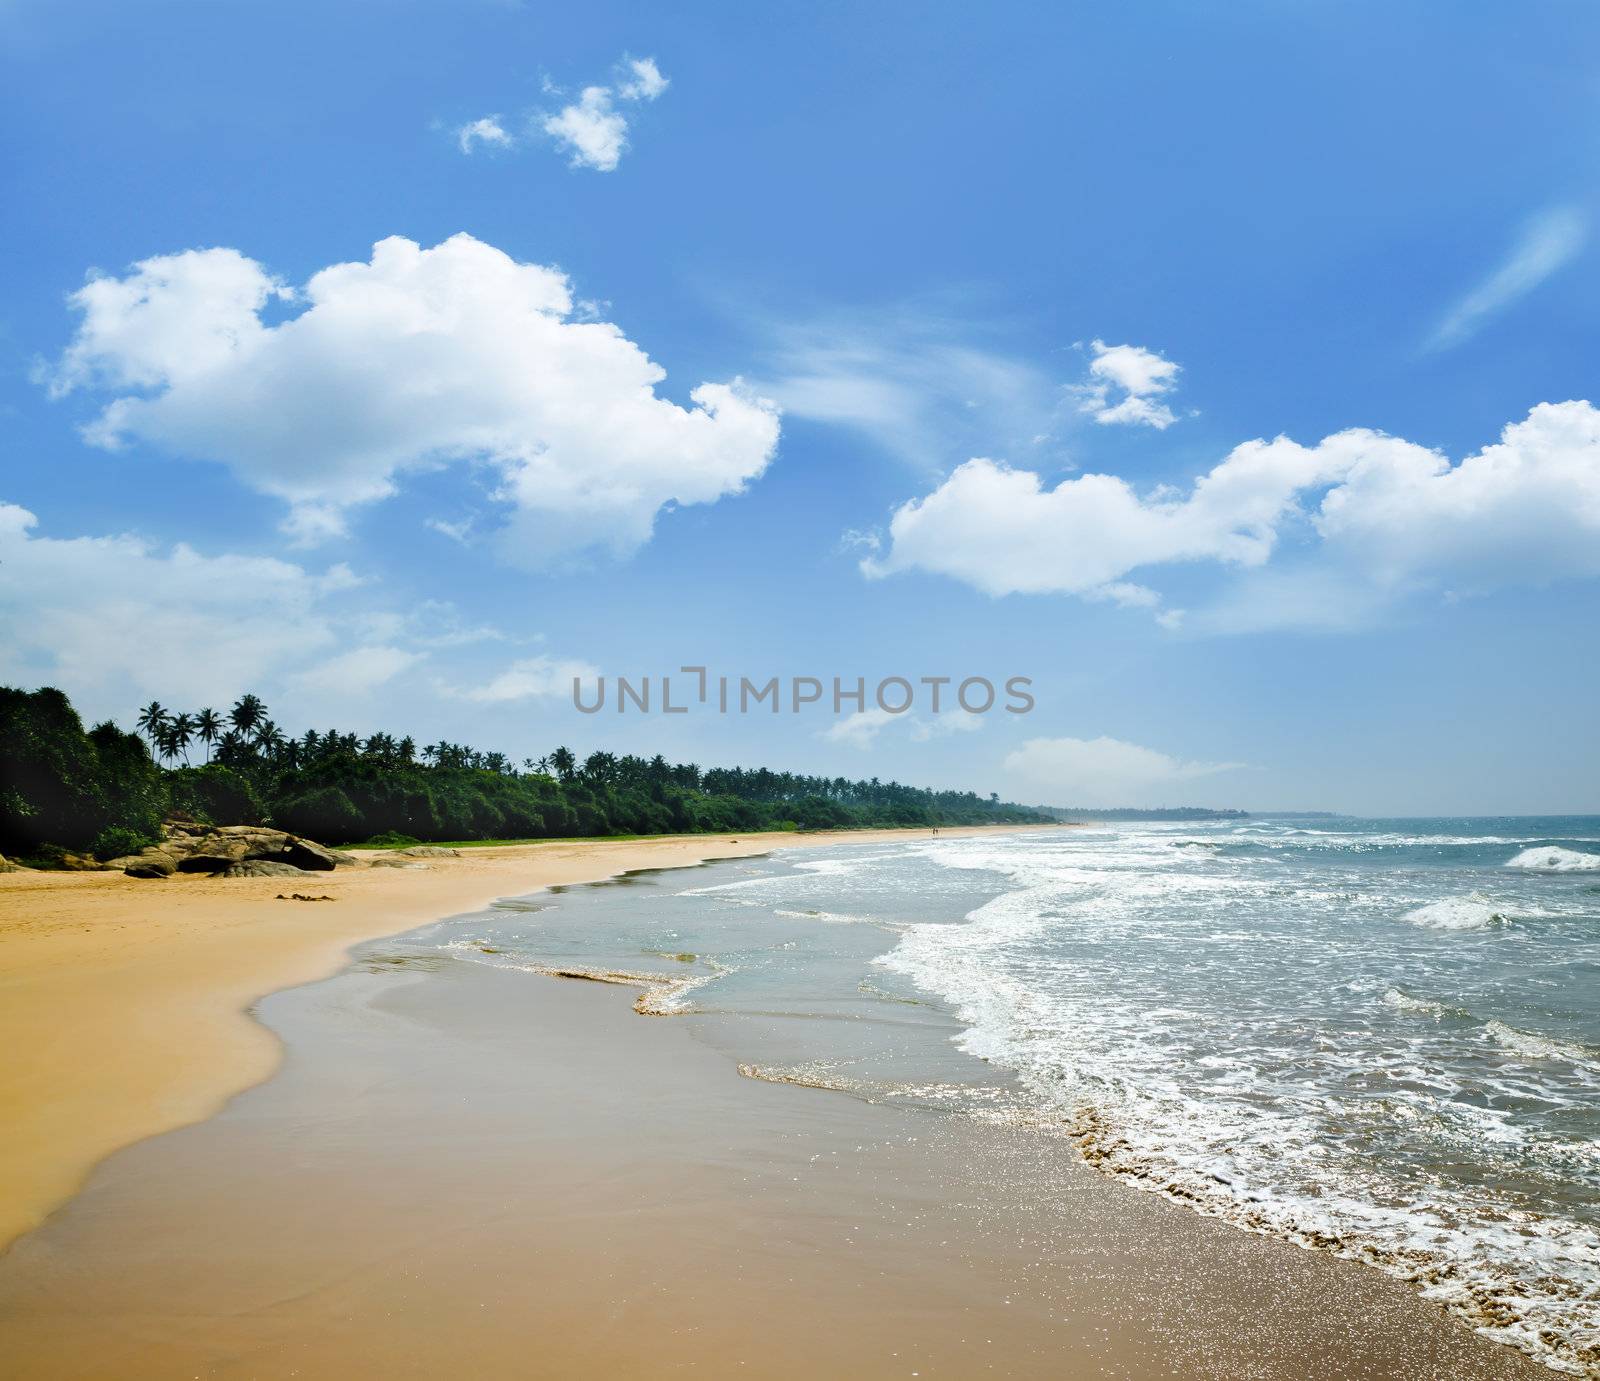 sandy deserted beach on a tropical island